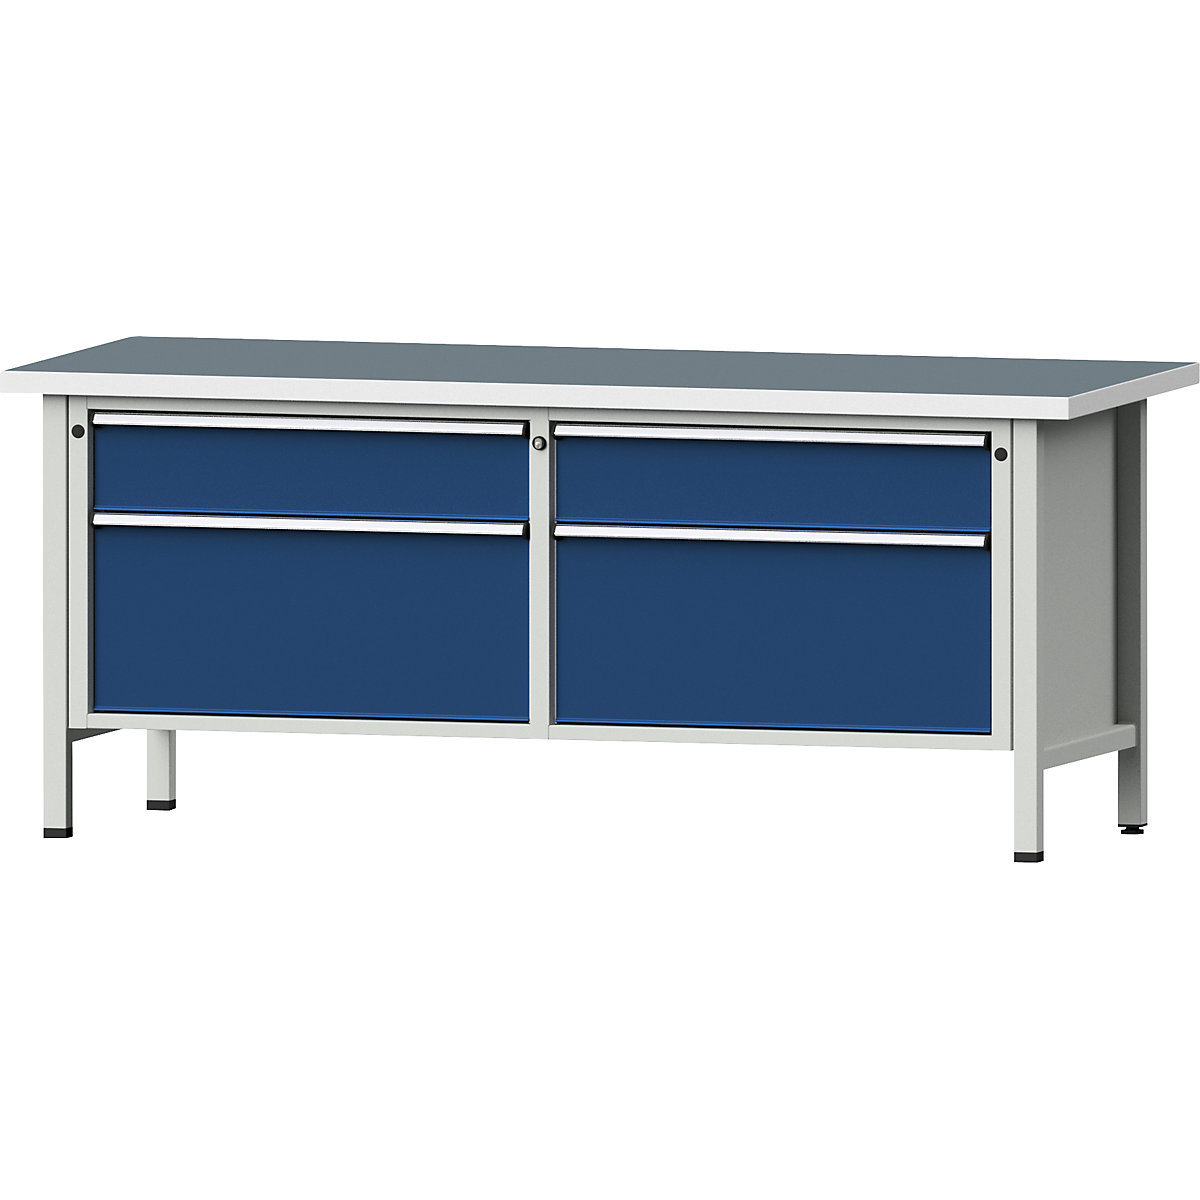 Dielenský stôl so zásuvkami XL/XXL, stojanové vyhotovenie – ANKE, šírka 2000 mm, 4 zásuvky, univerzálna doska, čelo enciánová modrá-9